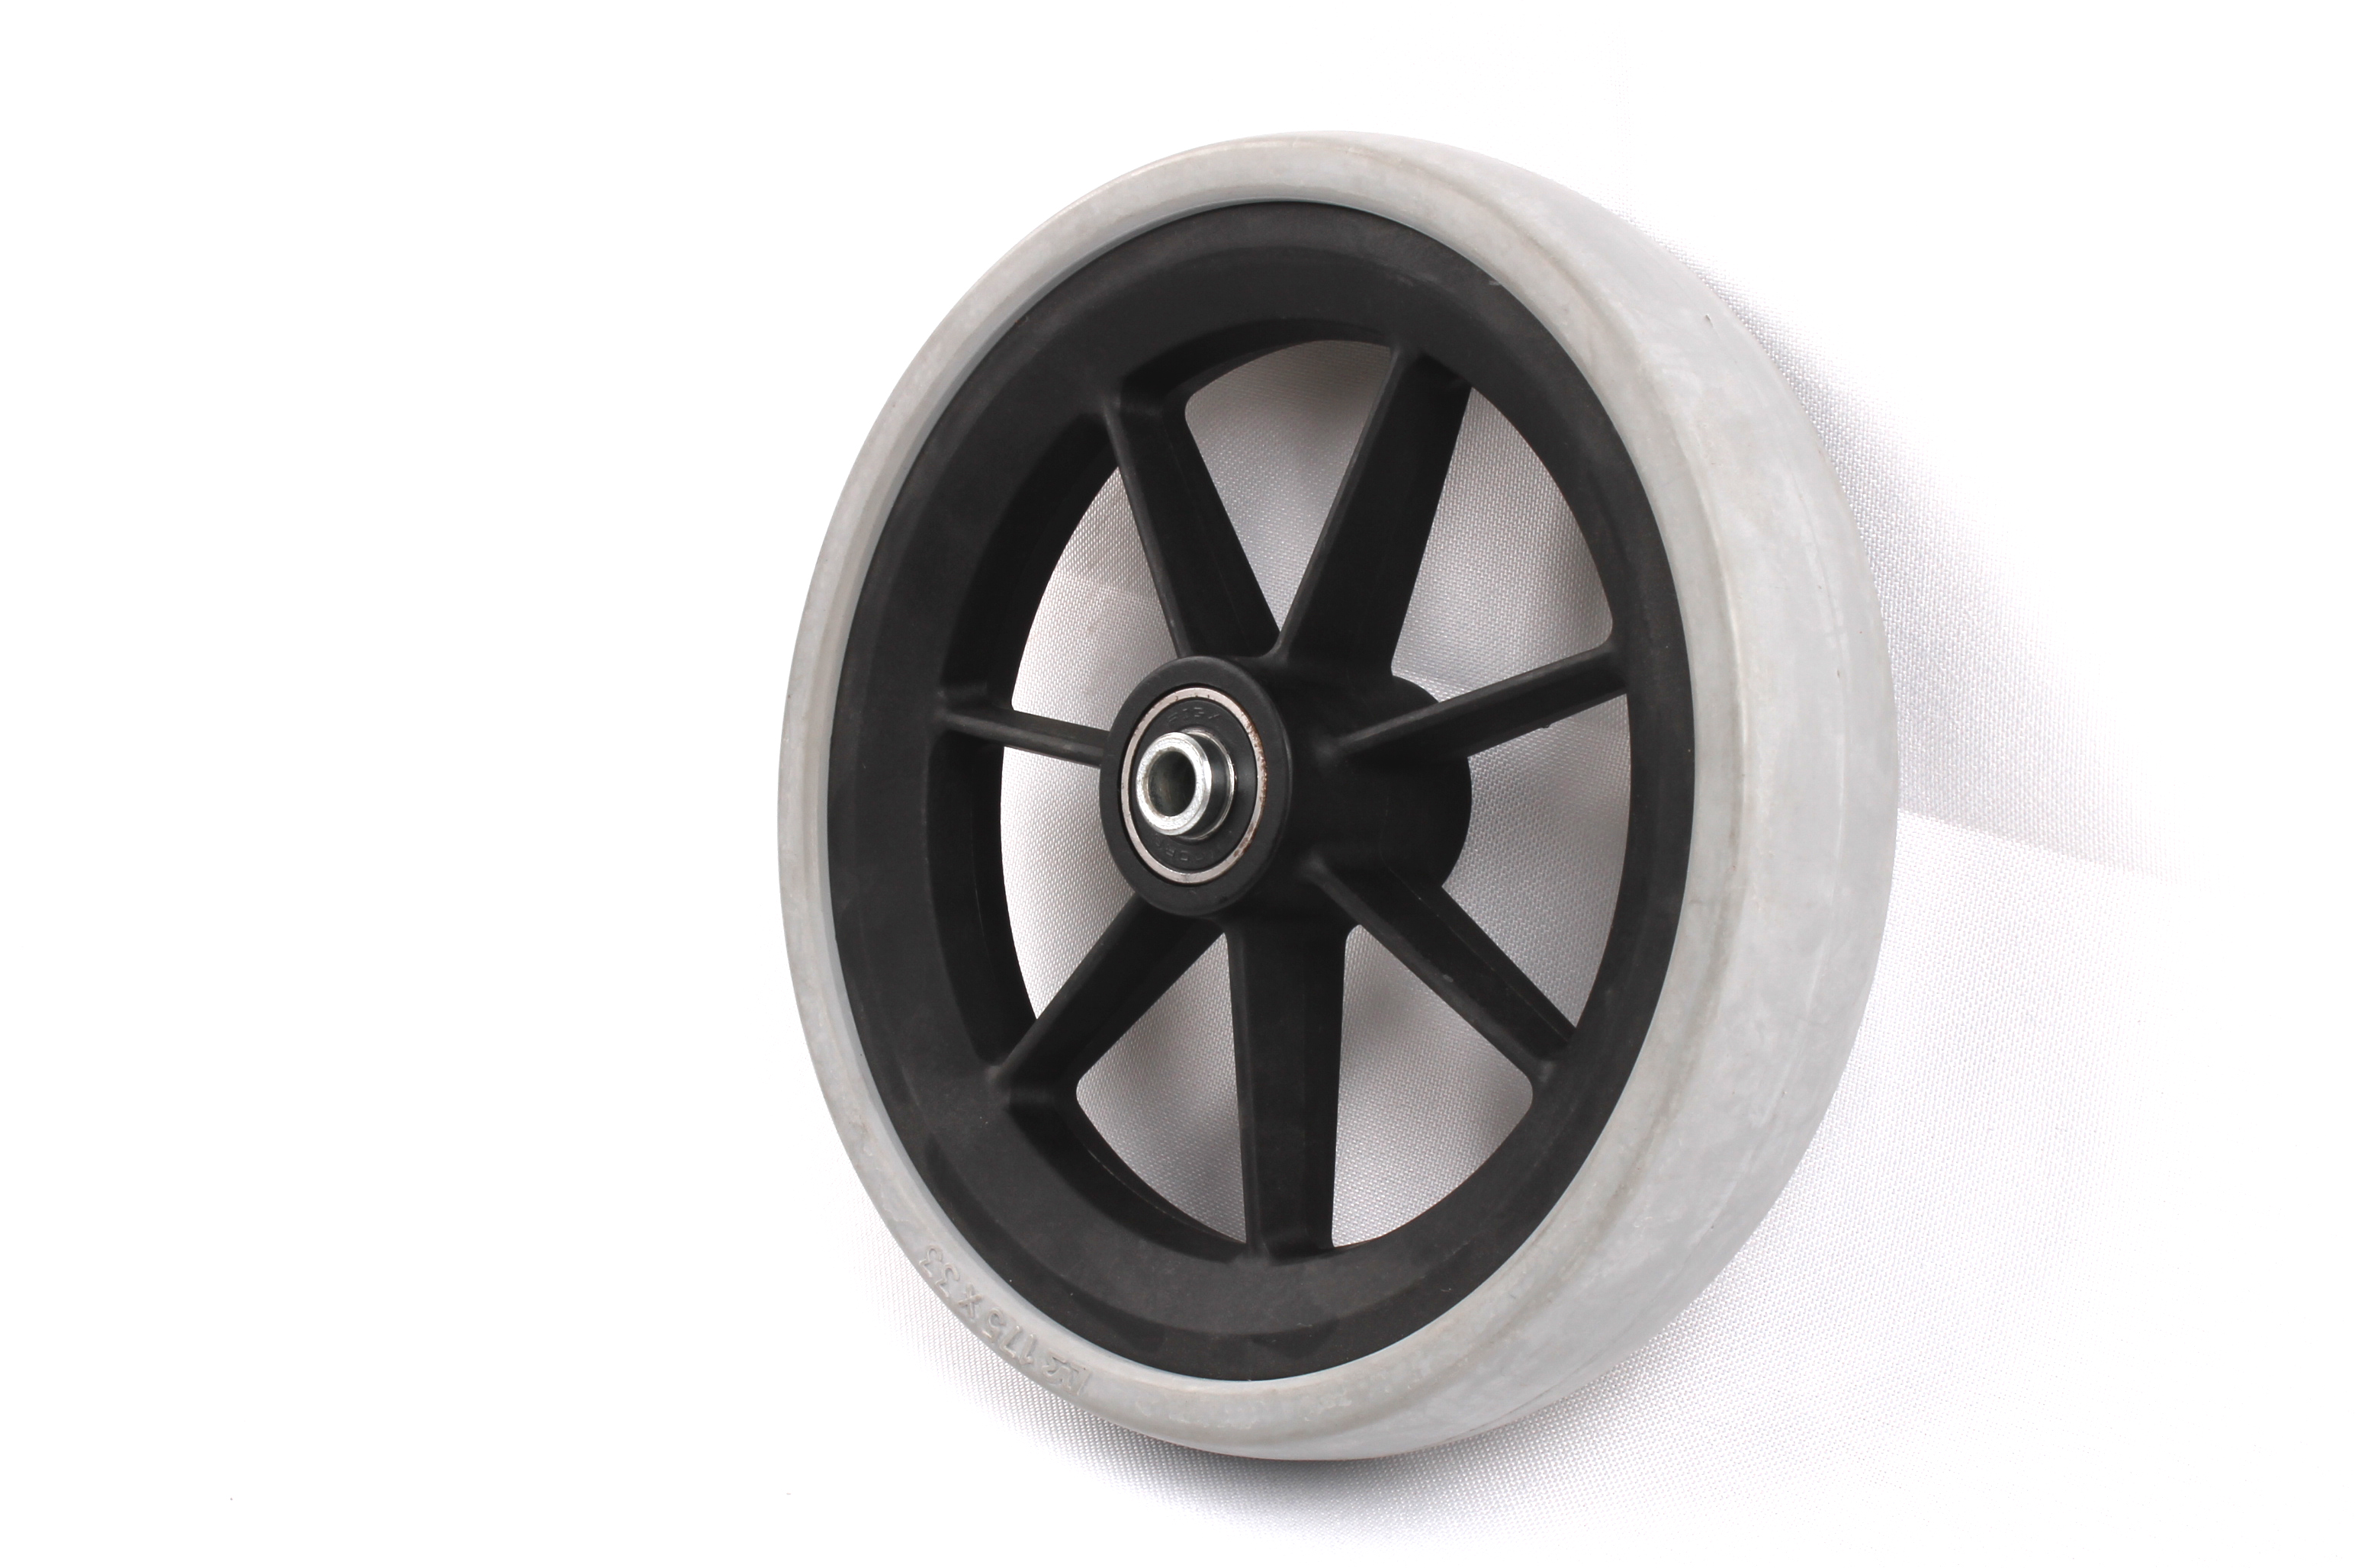 Neumáticos Ambiental de la PU de porcelana hecha por el fabricante de neumáticos profesional diseñado neumático sólido